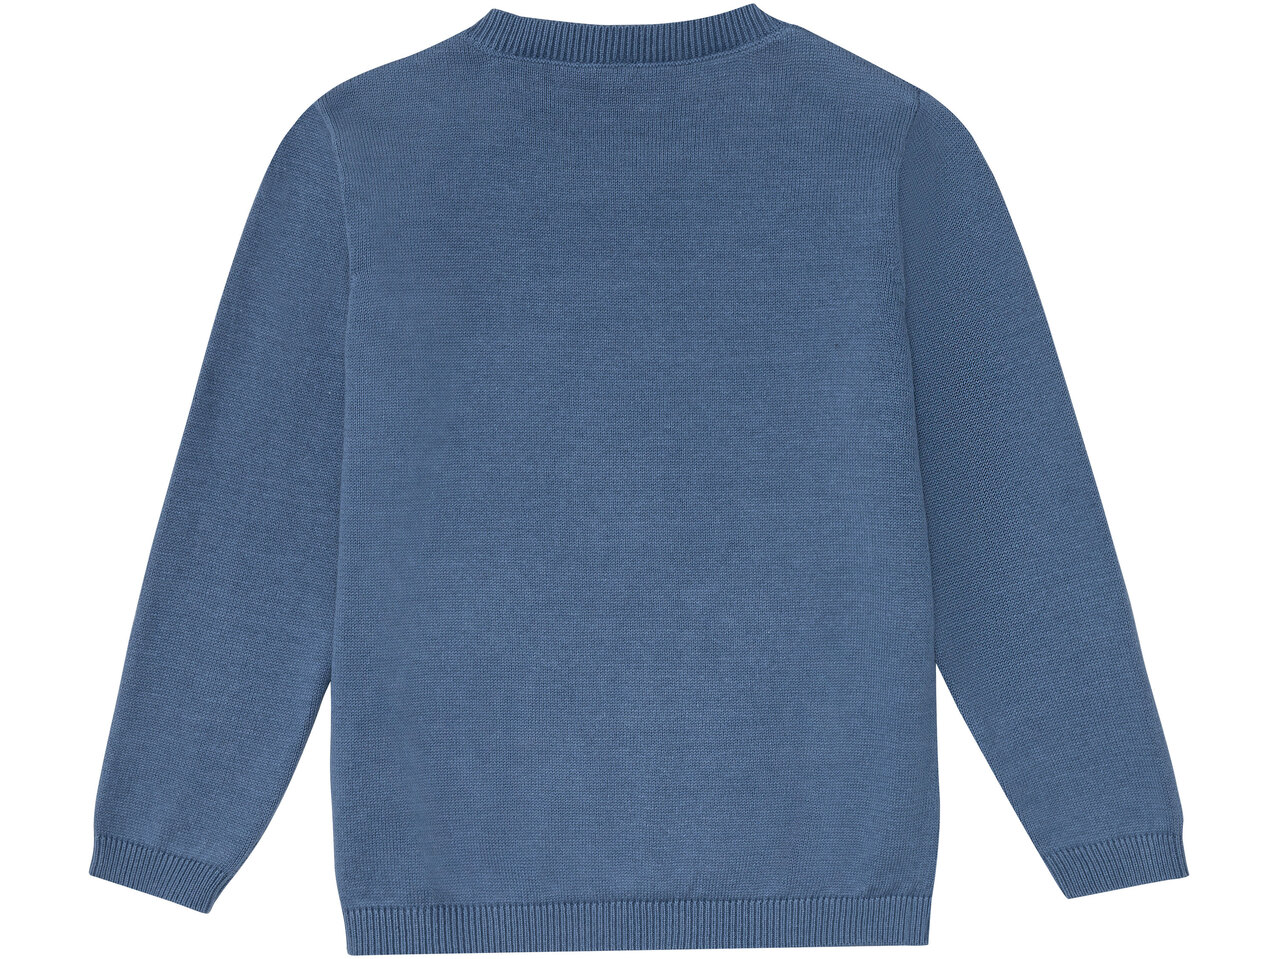 Sweter dziewczęcy z bawełny , cena 29,99 PLN 
Sweter dziewczęcy z bawełny 
- ...